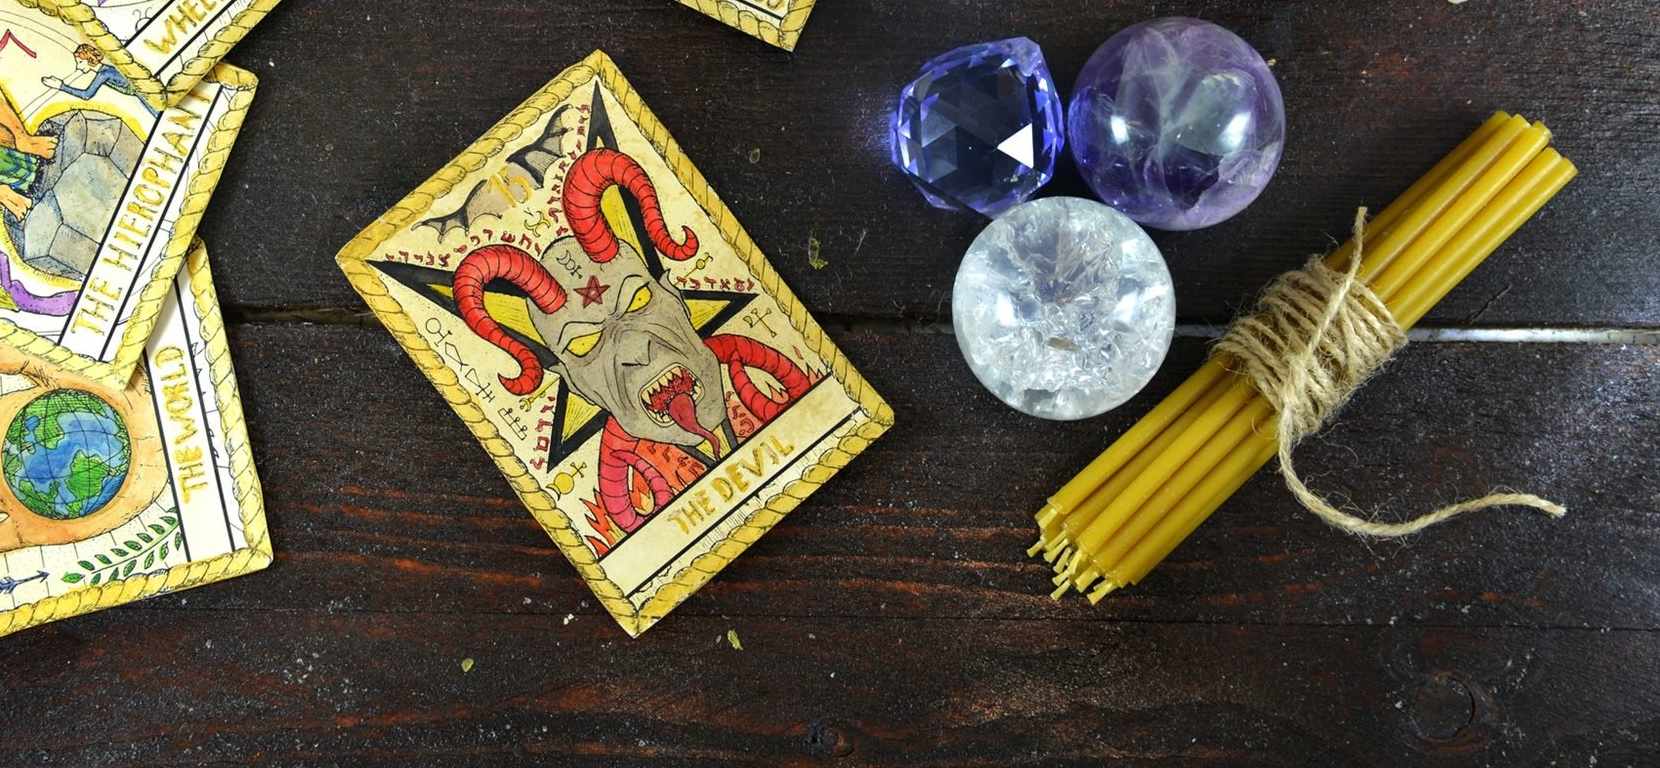 Nhà ảo thuật và Ác quỷ trong Tarot